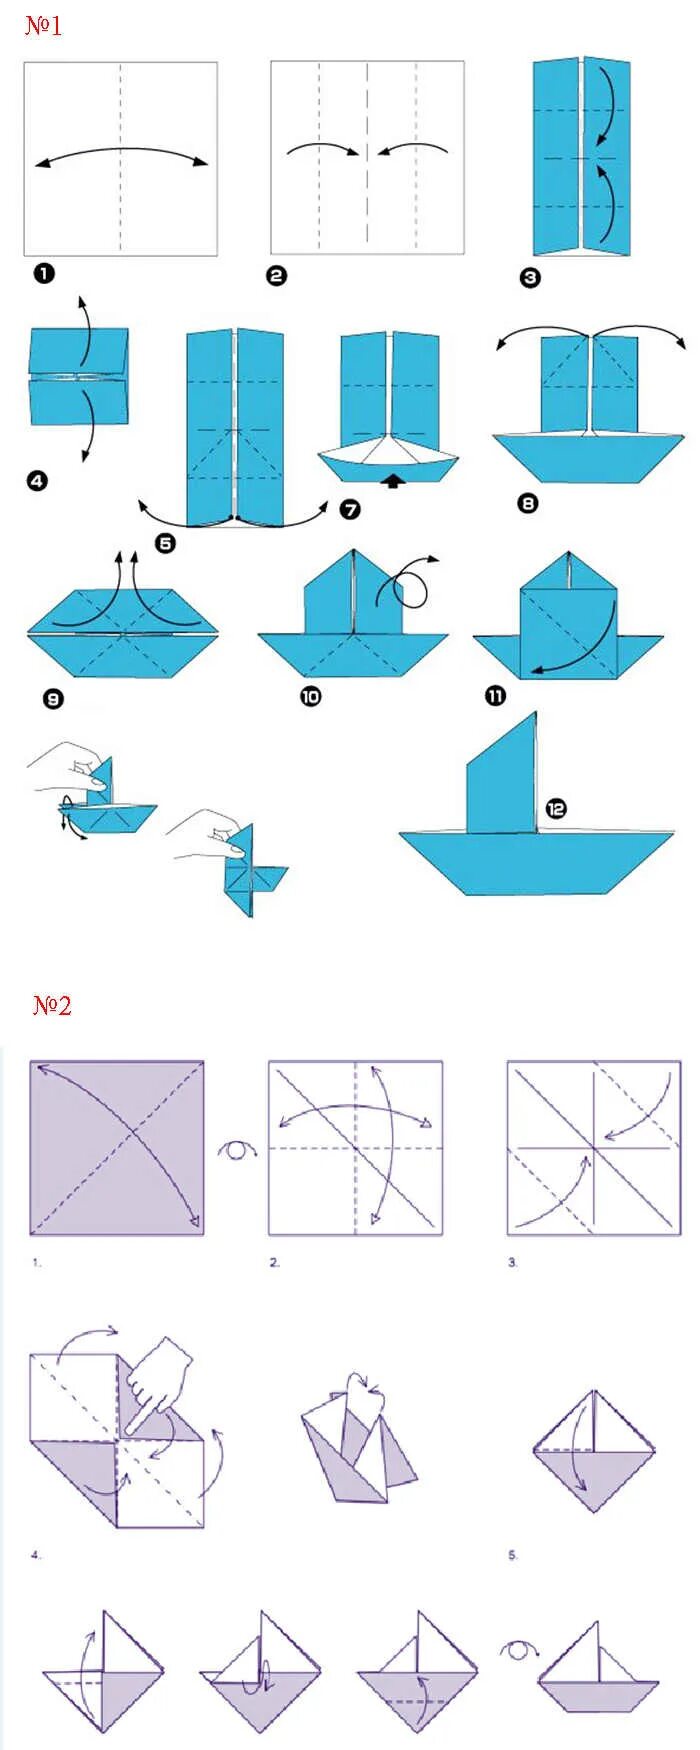 Оригами из бумаги схемы для начинающих кораблик. Как сделать кораблик из бумаги пошаговая инструкция. Как делается кораблик из бумаги а4. Оригами из бумаги кораблик схема поэтапно для детей.